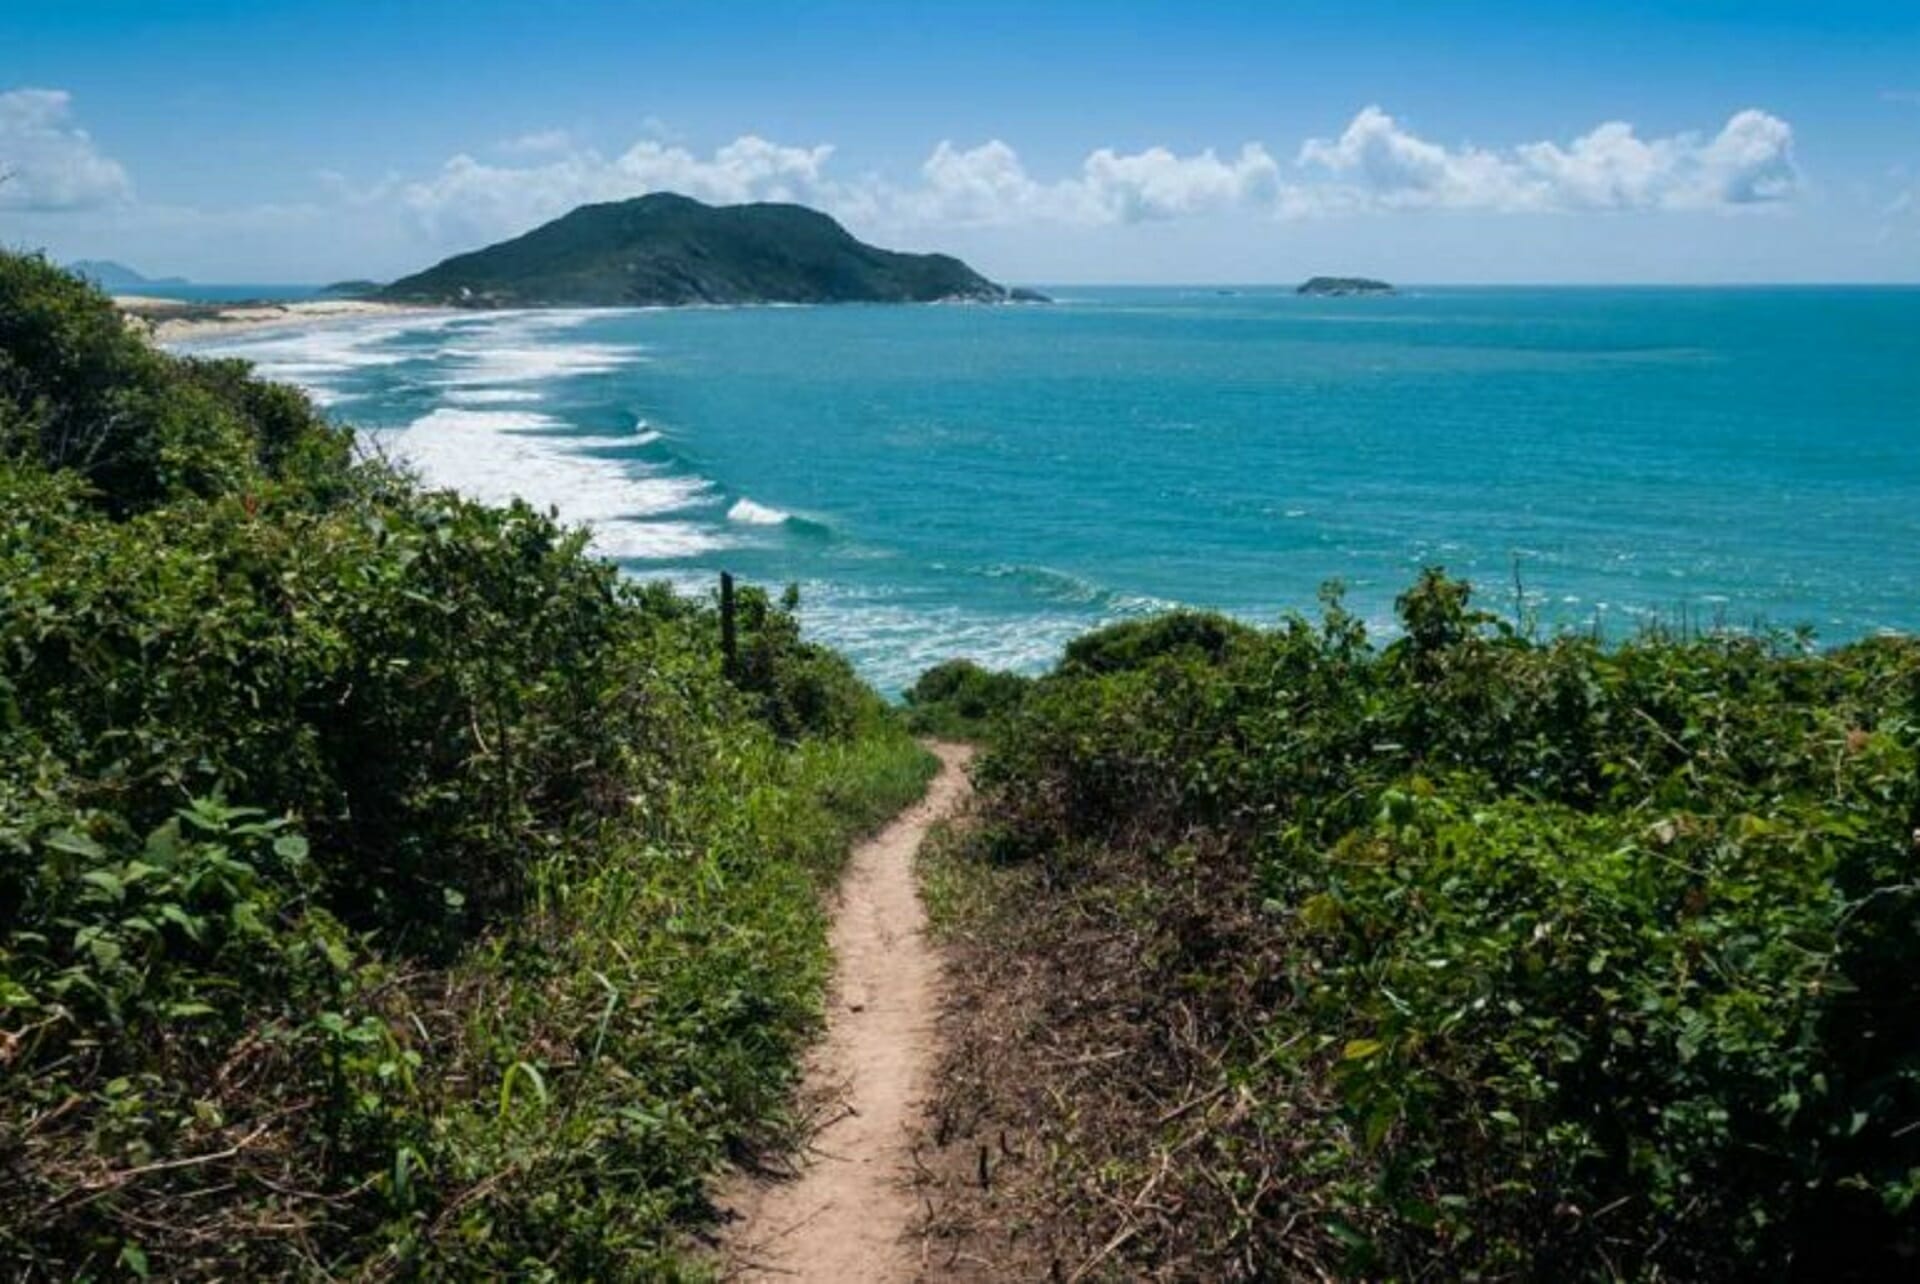 PRAIA DOS INGLESES à LAGOINHA – trilha de 11 km em Florianópolis – Mochilão  Sabático